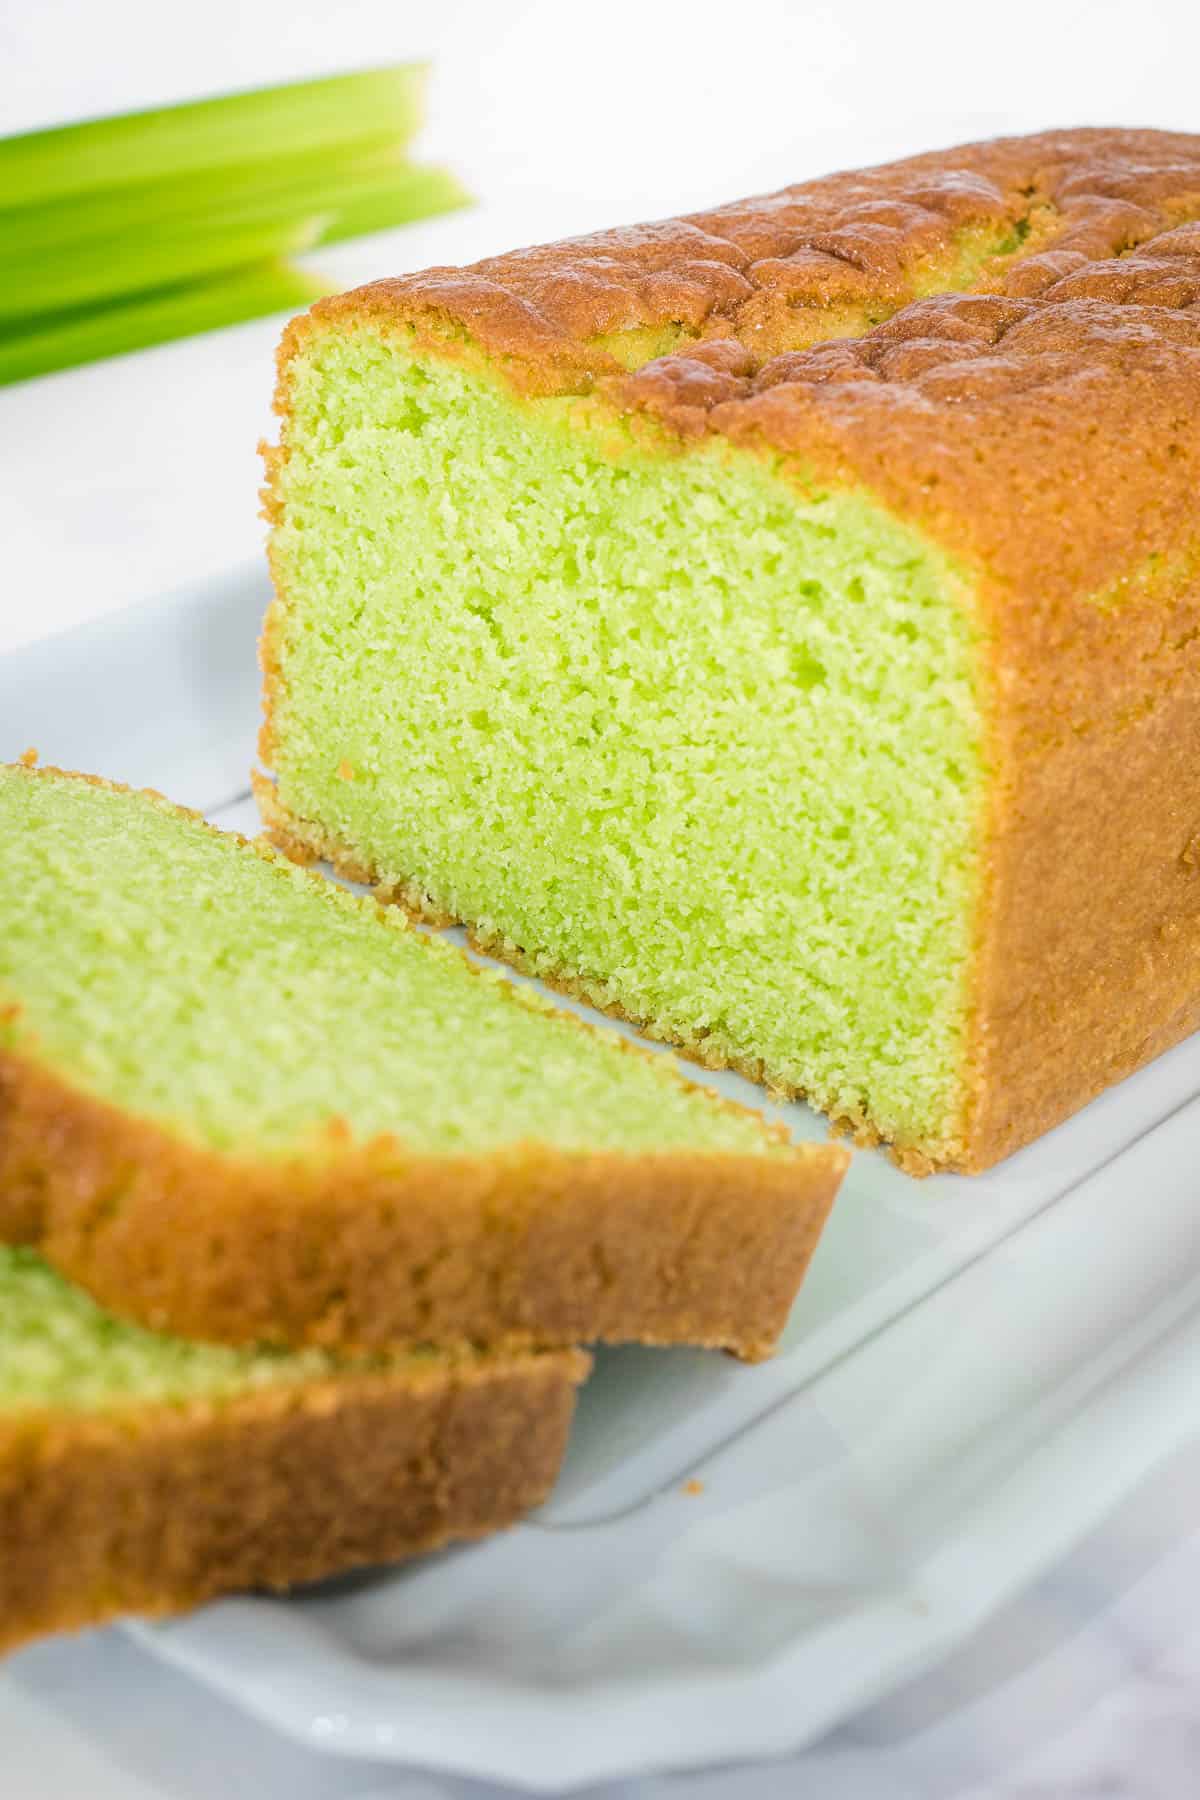 Slices of green loaf cake